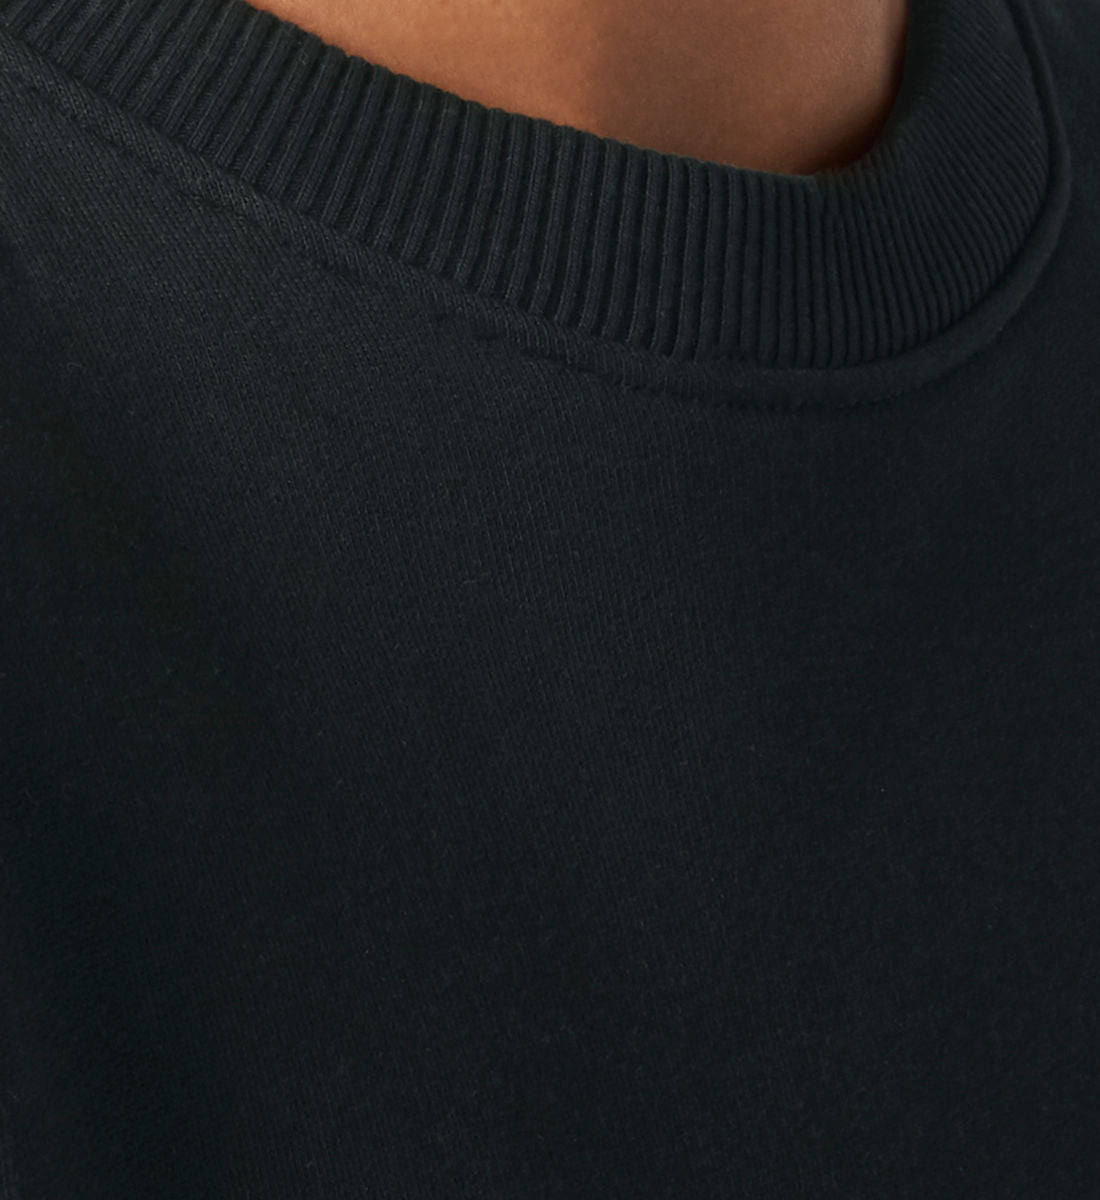 Schwarzes Sweatshirt Unisex für Frauen und Männer bedruckt mit dem Design der Roger Rockawoo Kollektion Lofi Life Guitarist